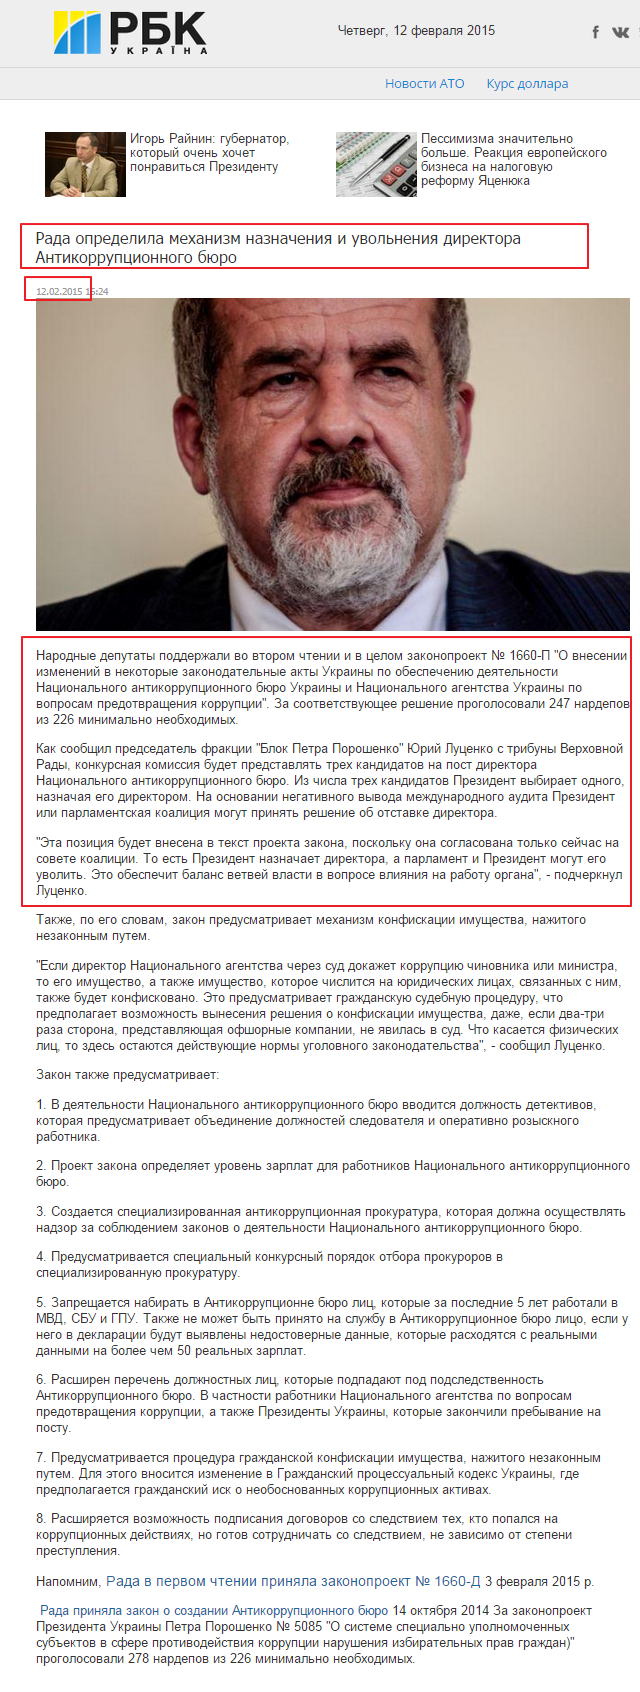 http://www.rbc.ua/rus/news/politics/rada-opredelila-mehanizm-naznacheniya-i-uvolneniya-direktora-12022015162400